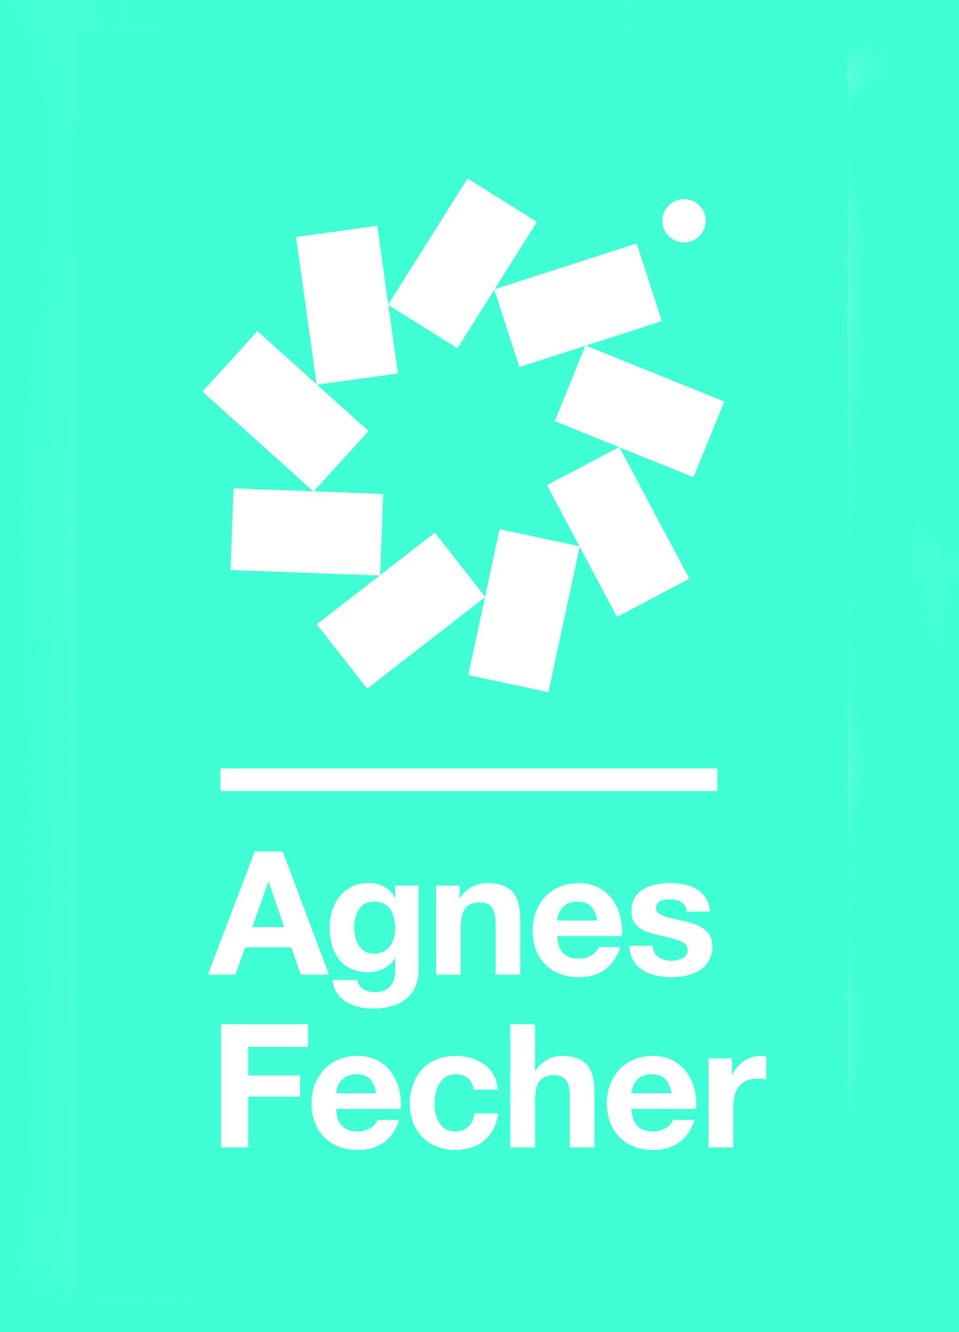 Agnes Fecher's Portfolio